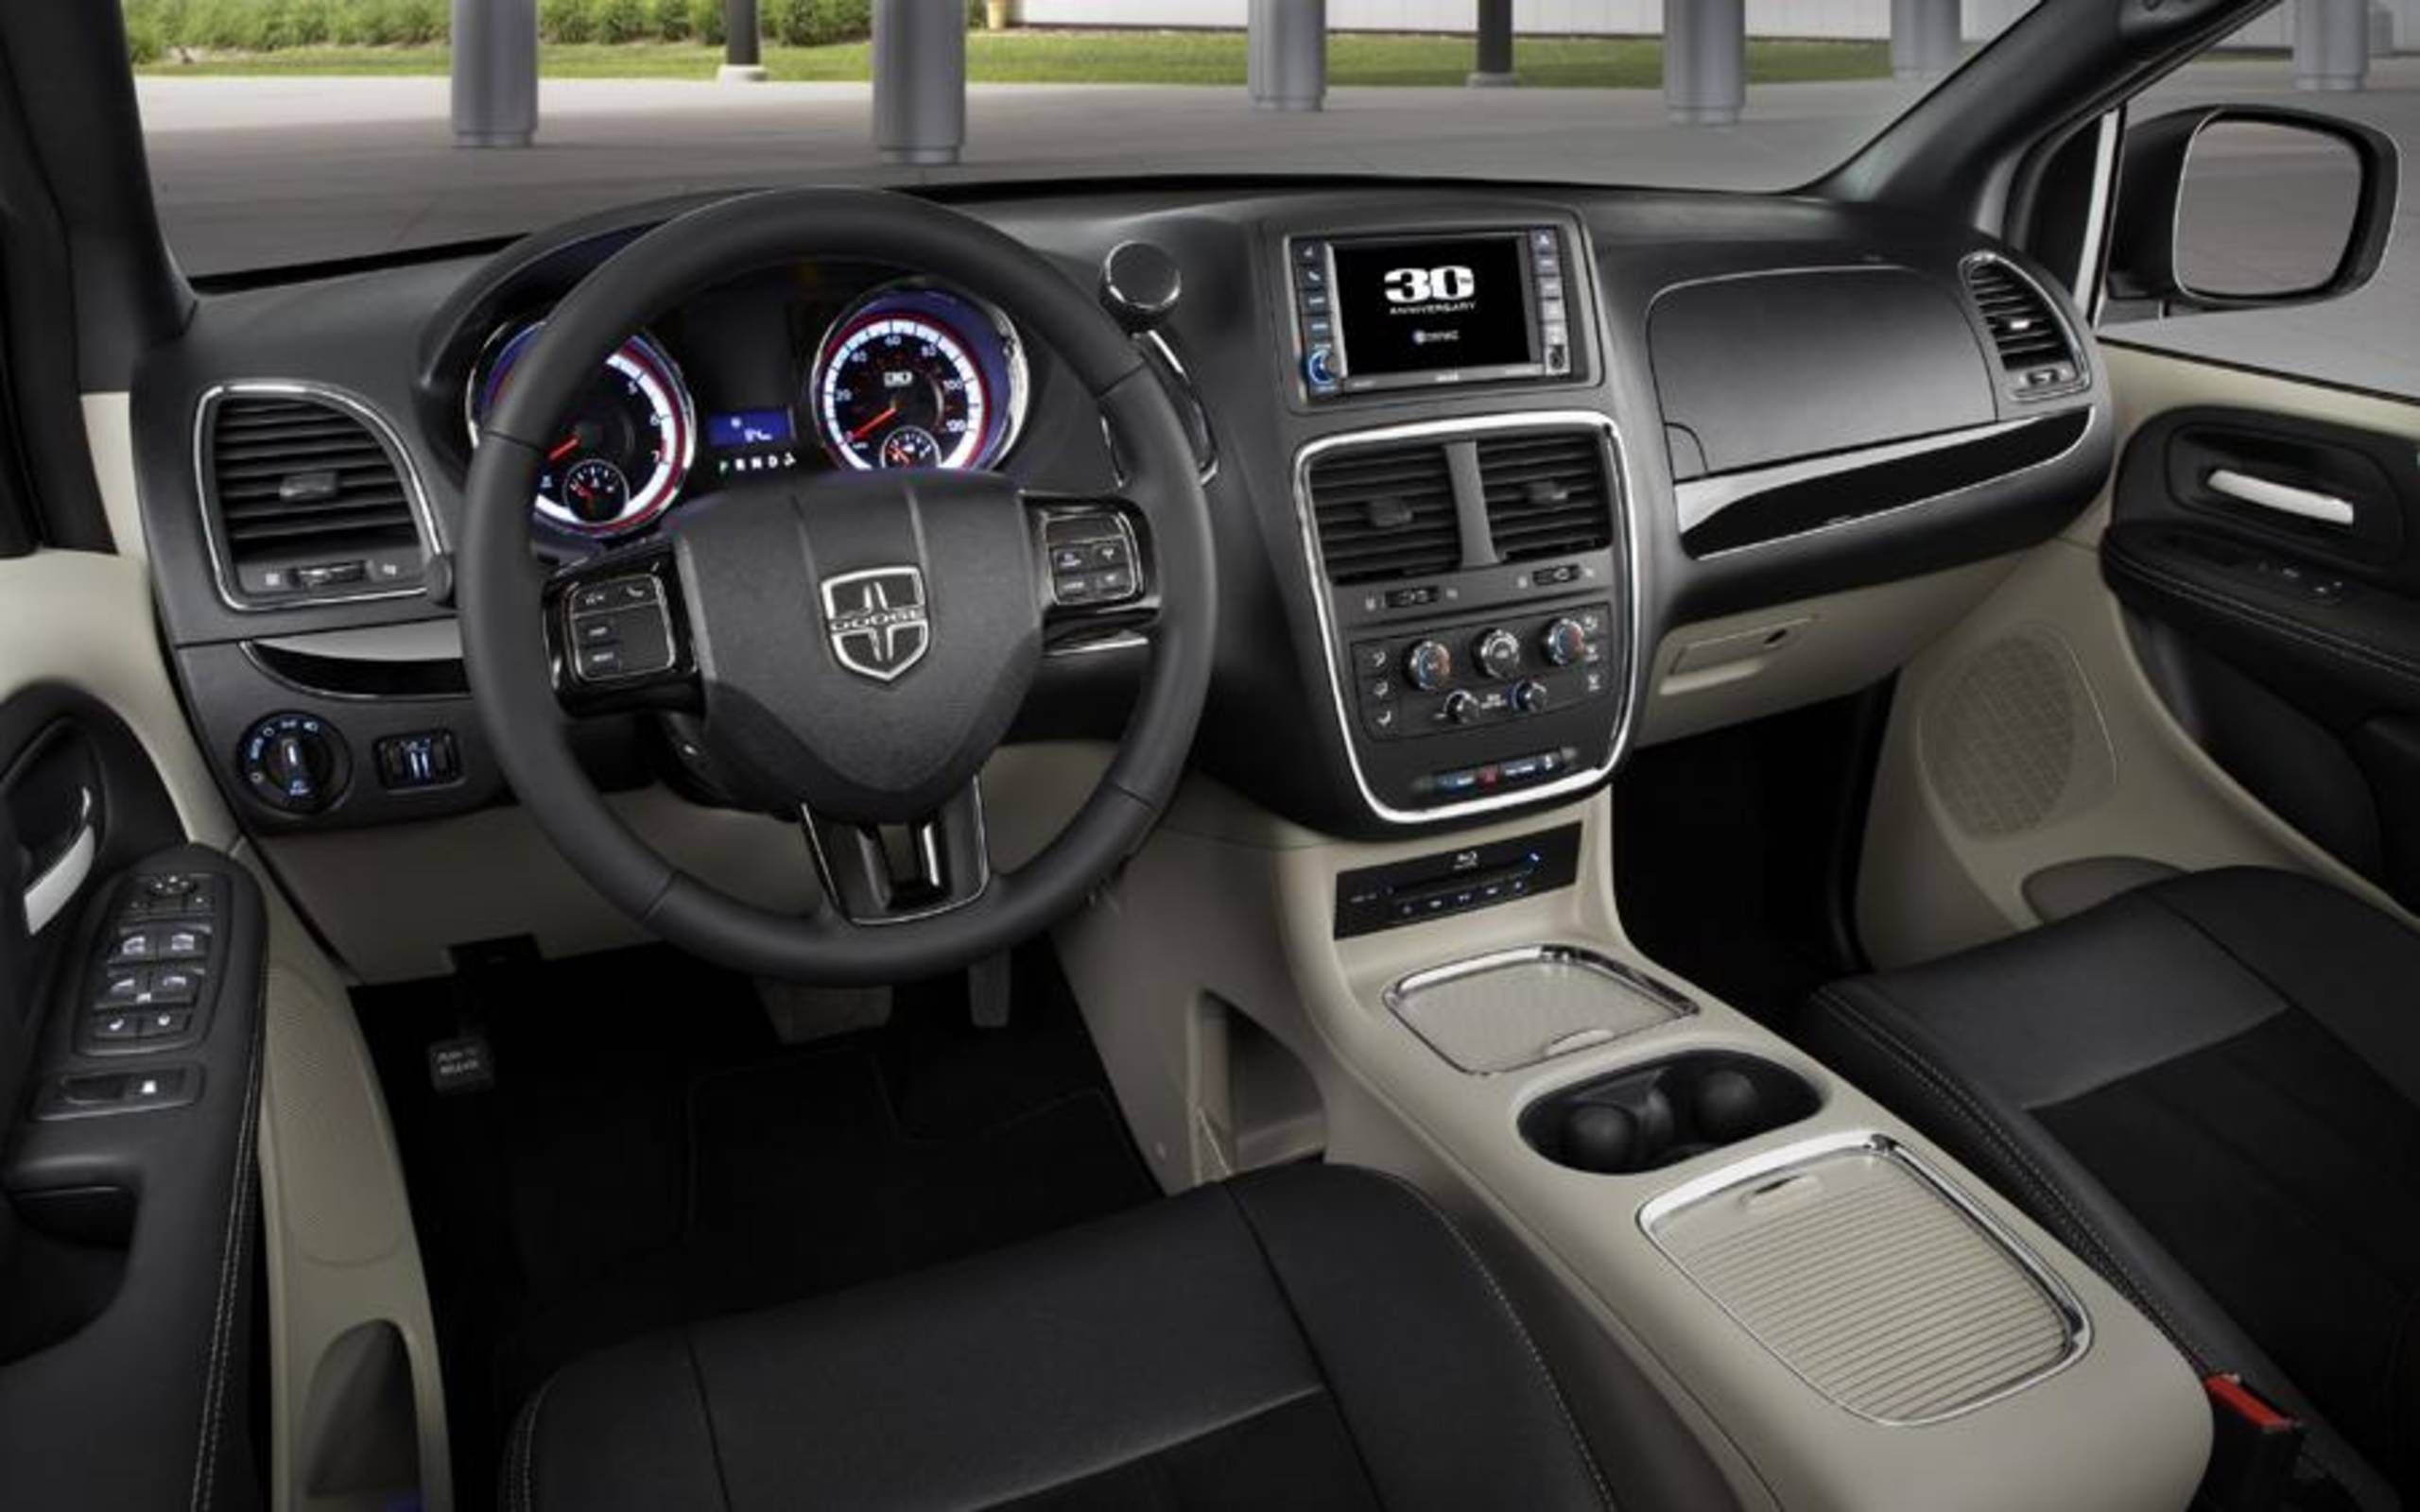 2014 Dodge Grand Caravan SXT review notes